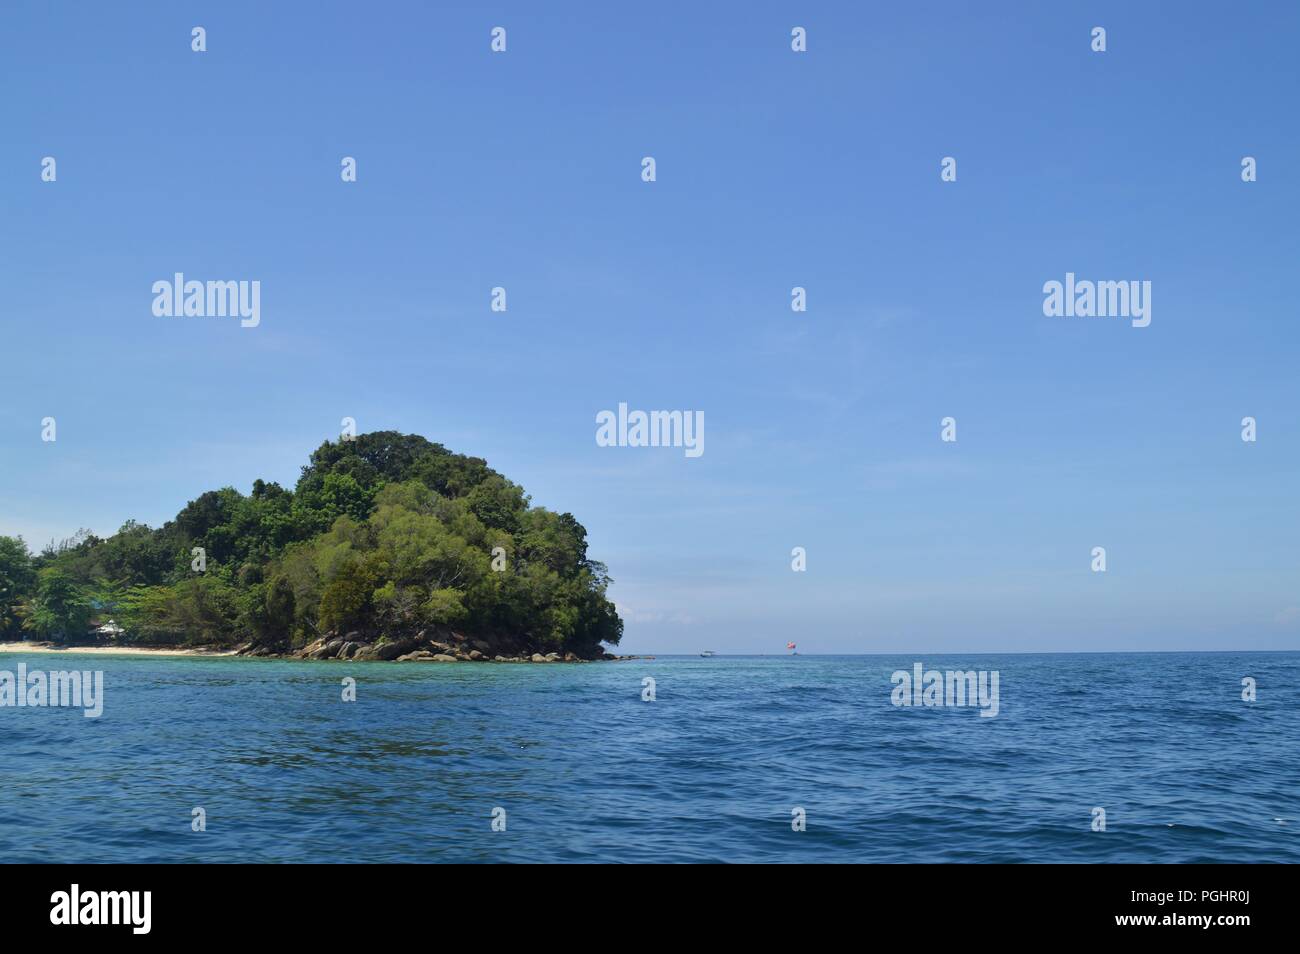 Vista parcial de una isla Foto de stock